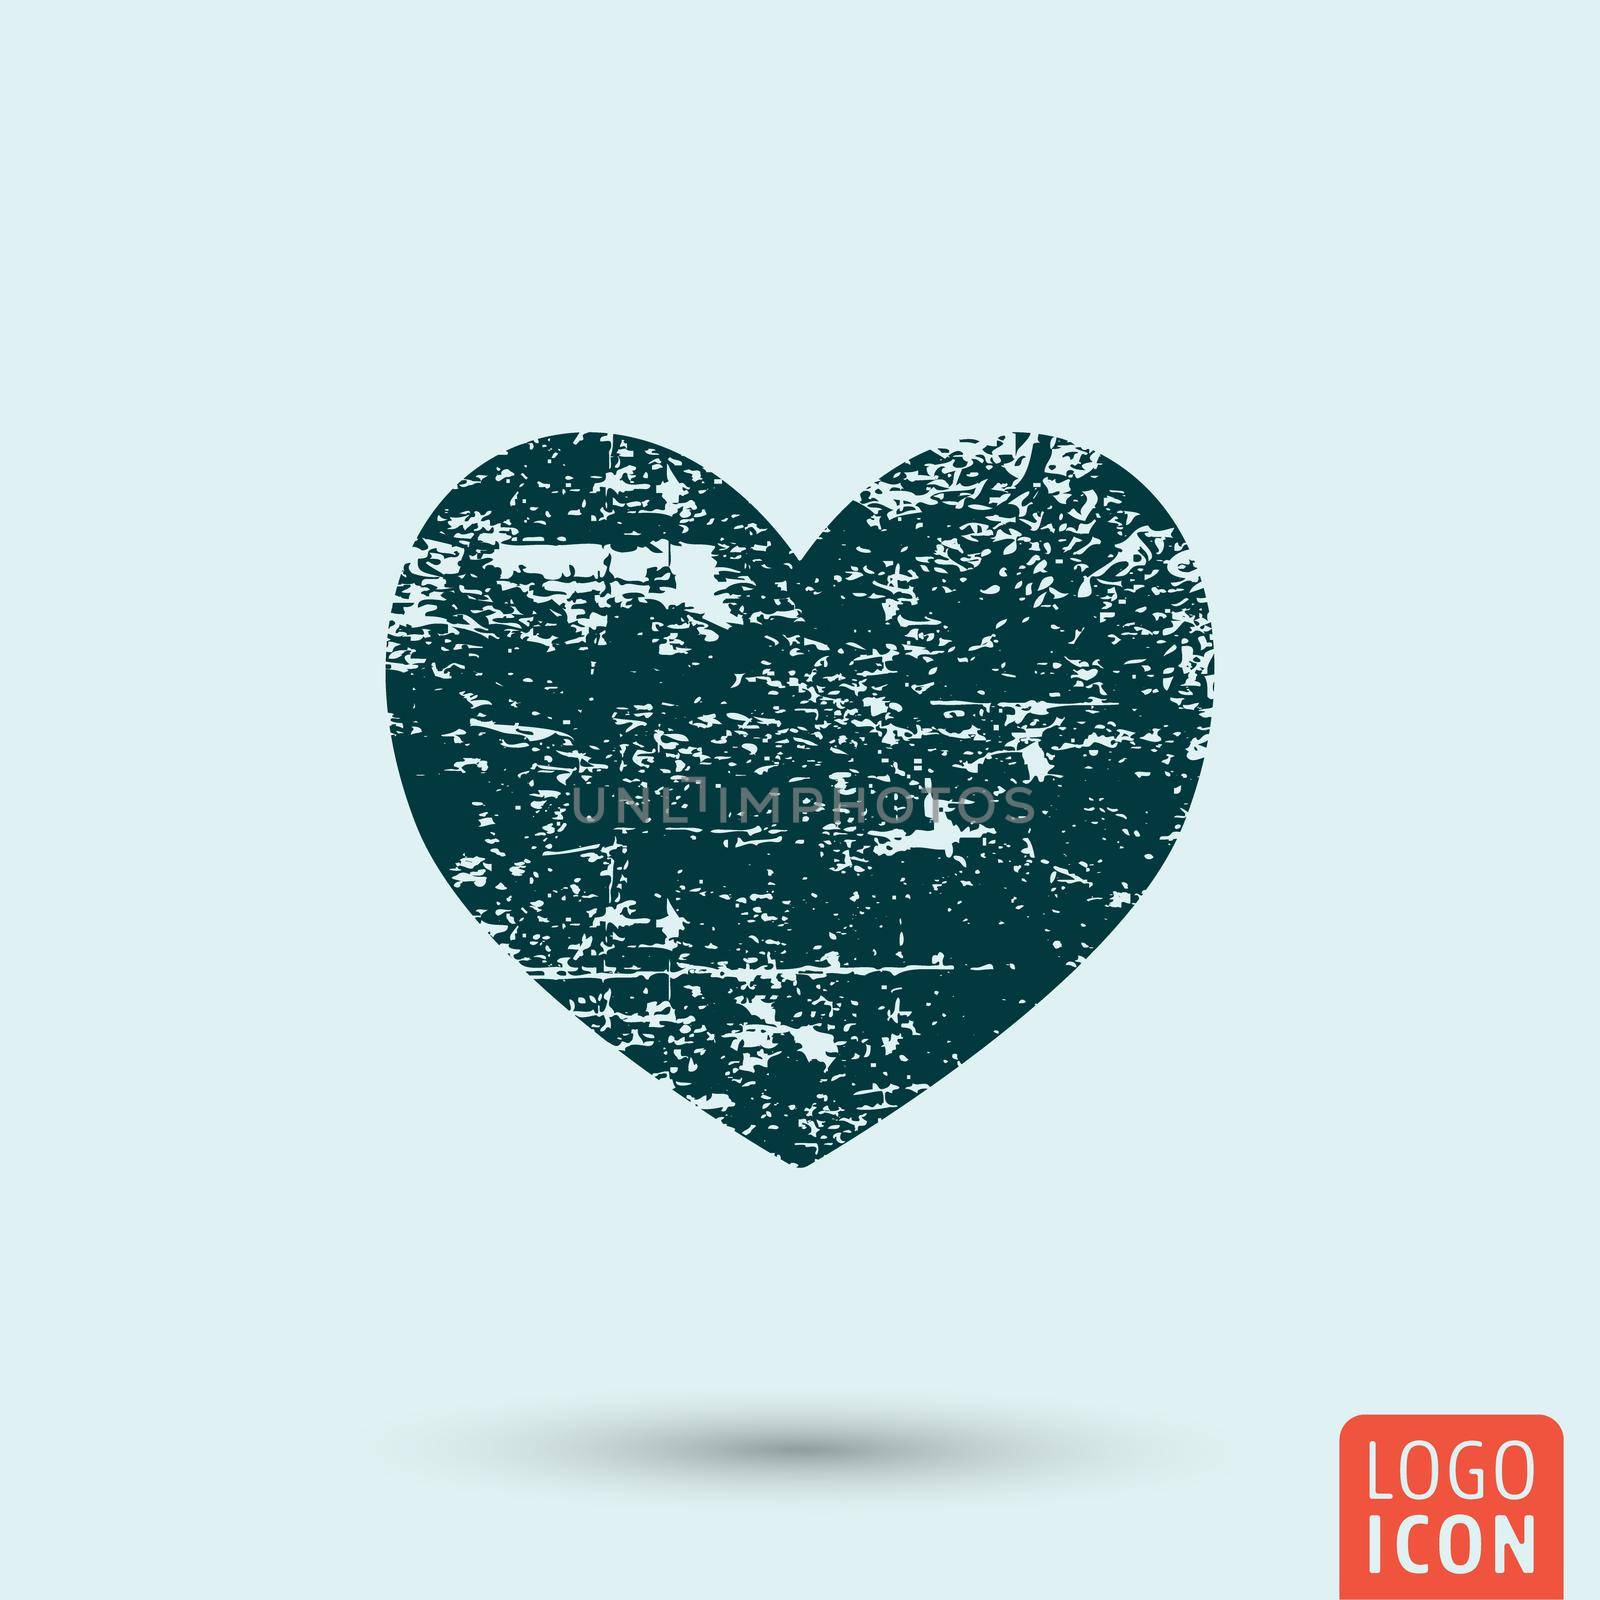 Grunge heart icon by Bobnevv